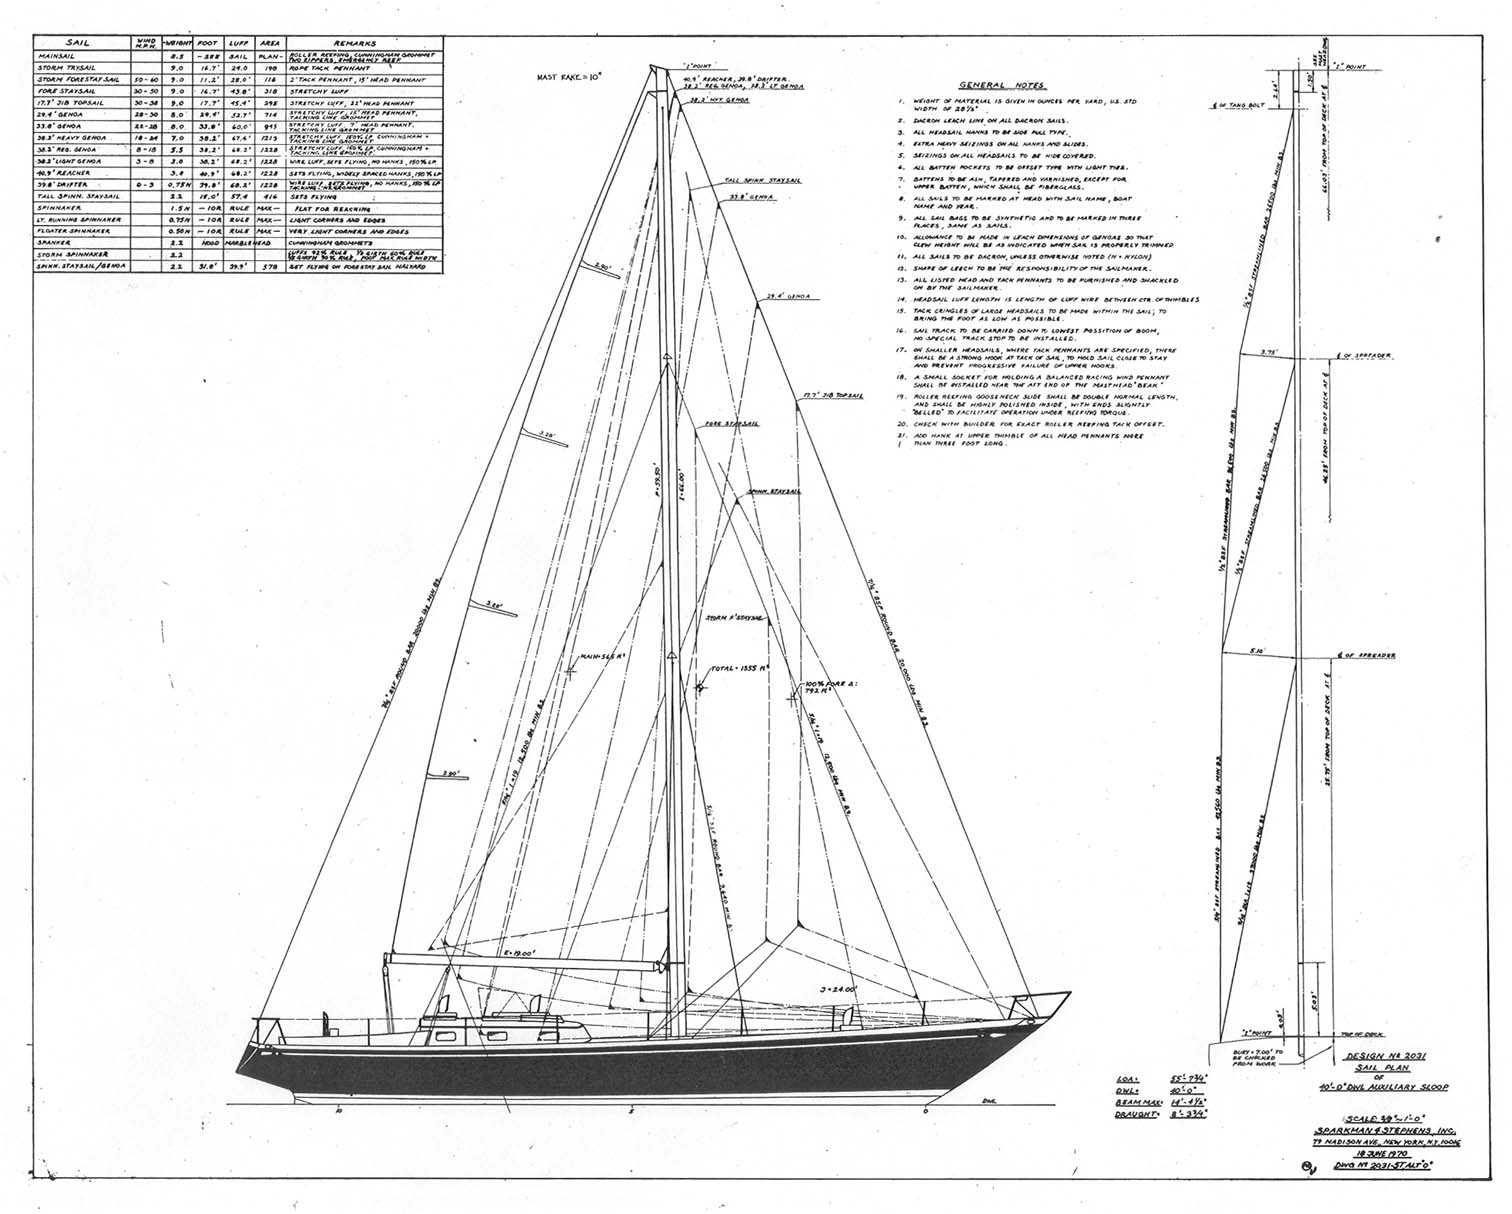 [Immagine: 201127213042_yankee girl sail plan.jpg]